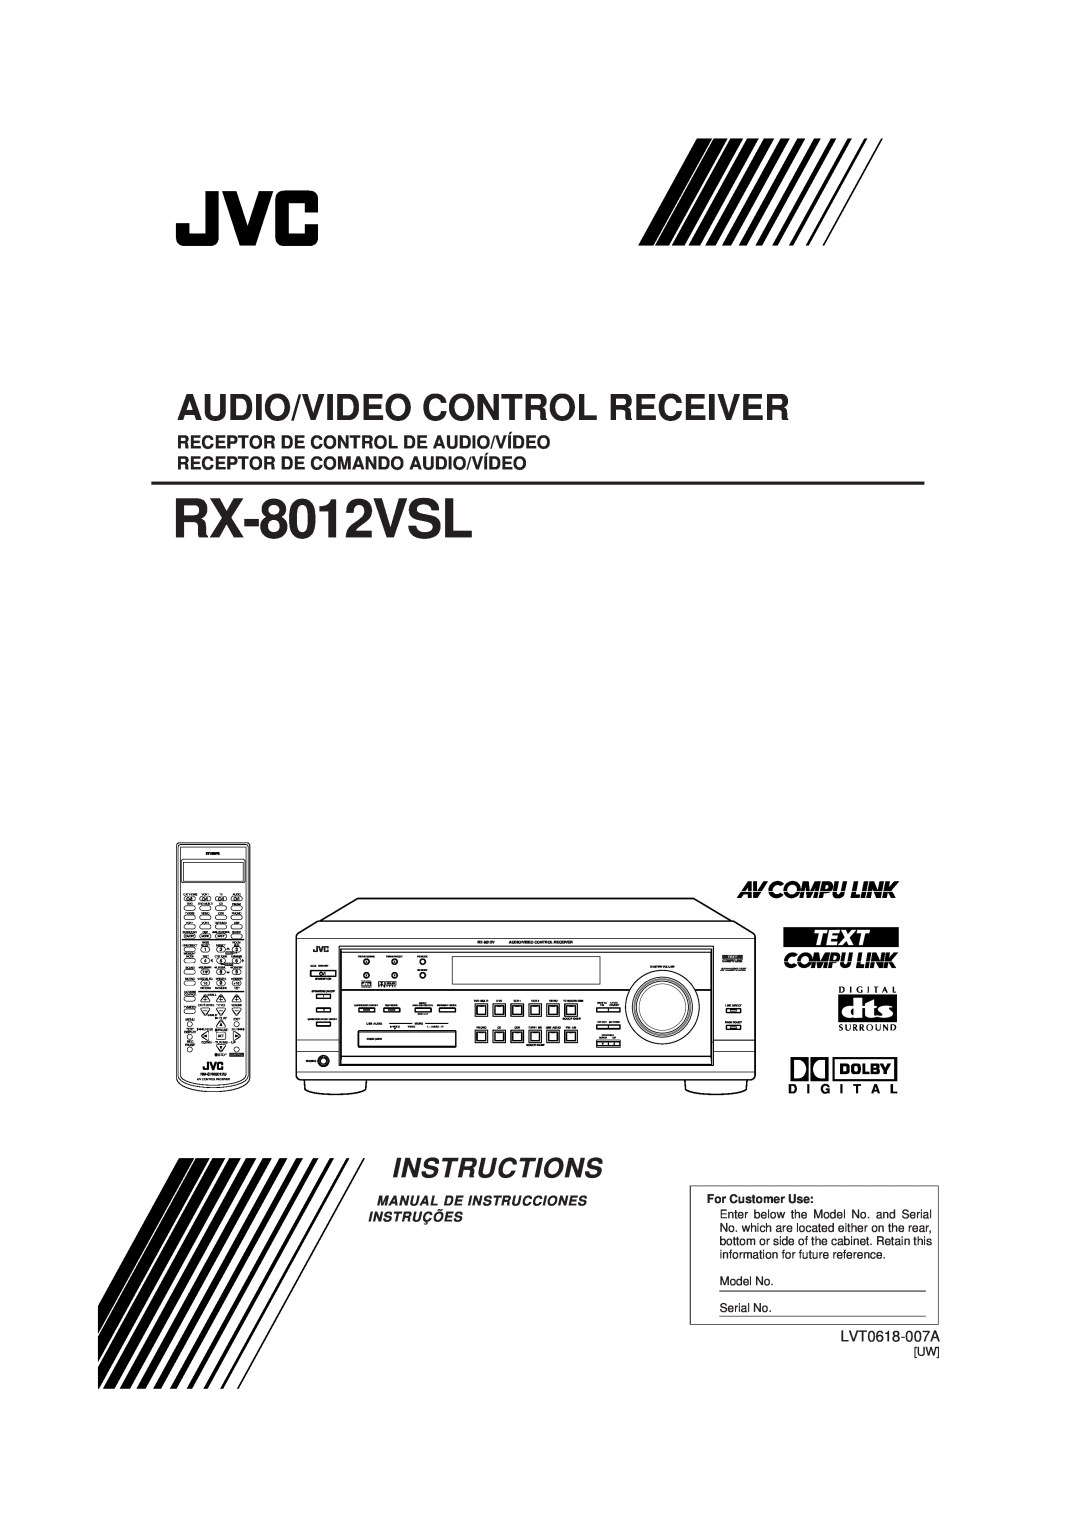 JVC RX-8012VSL manual Audio/Video Control Receiver, Instructions, Receptor De Control De Audio/Vídeo, LVT0618-007A 